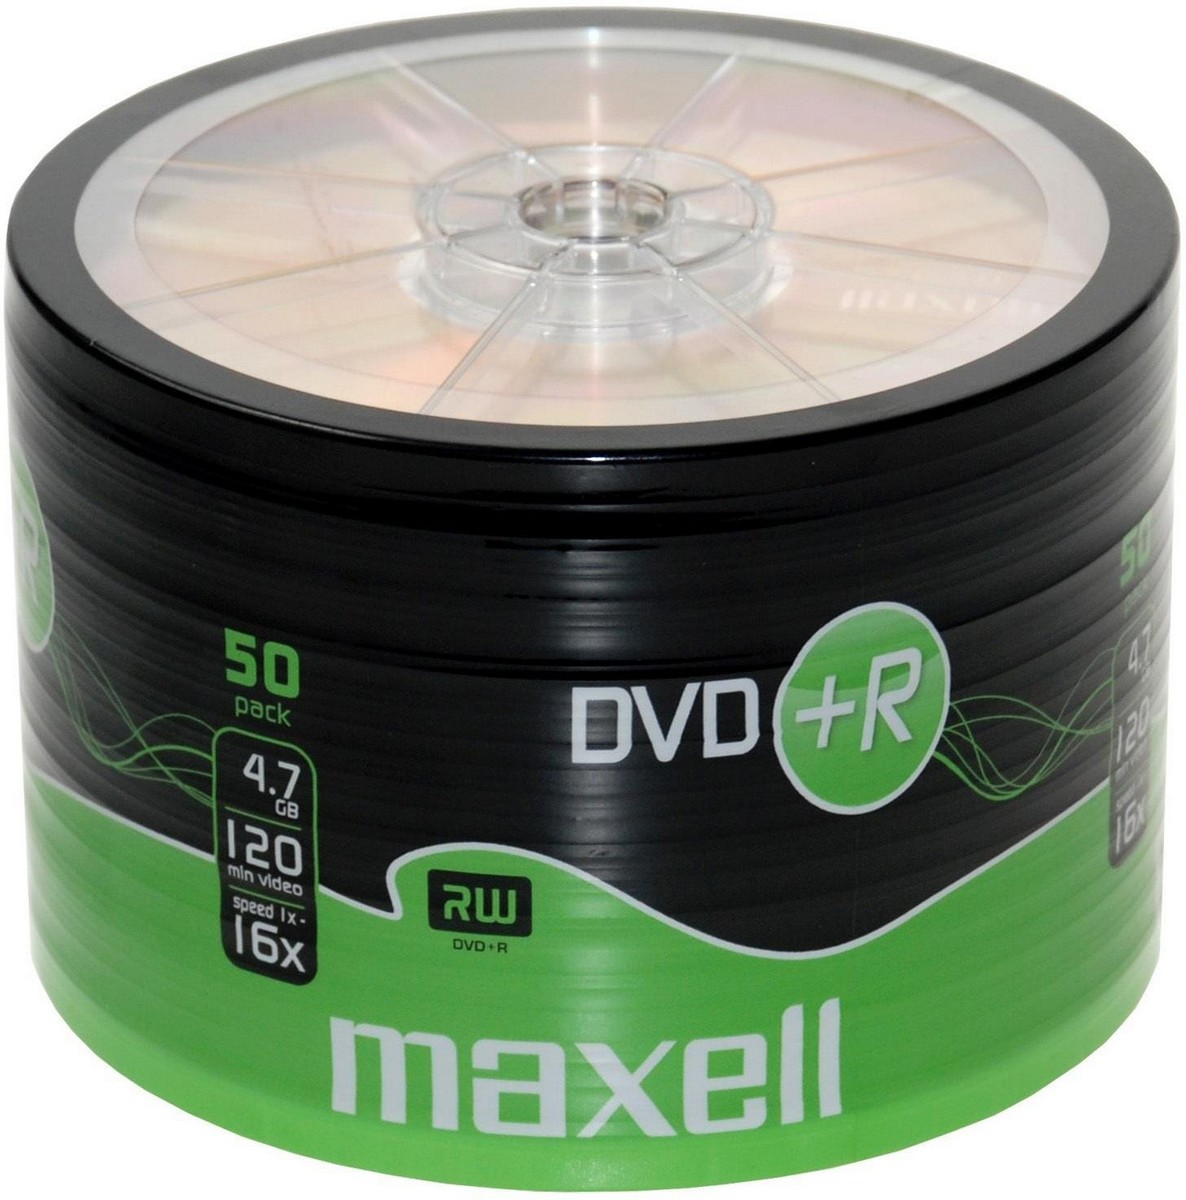 DVD+R Maxell 16X SP50 για Καταγραφή 120min / 4.7GB Συσκευασία 50 τμχ